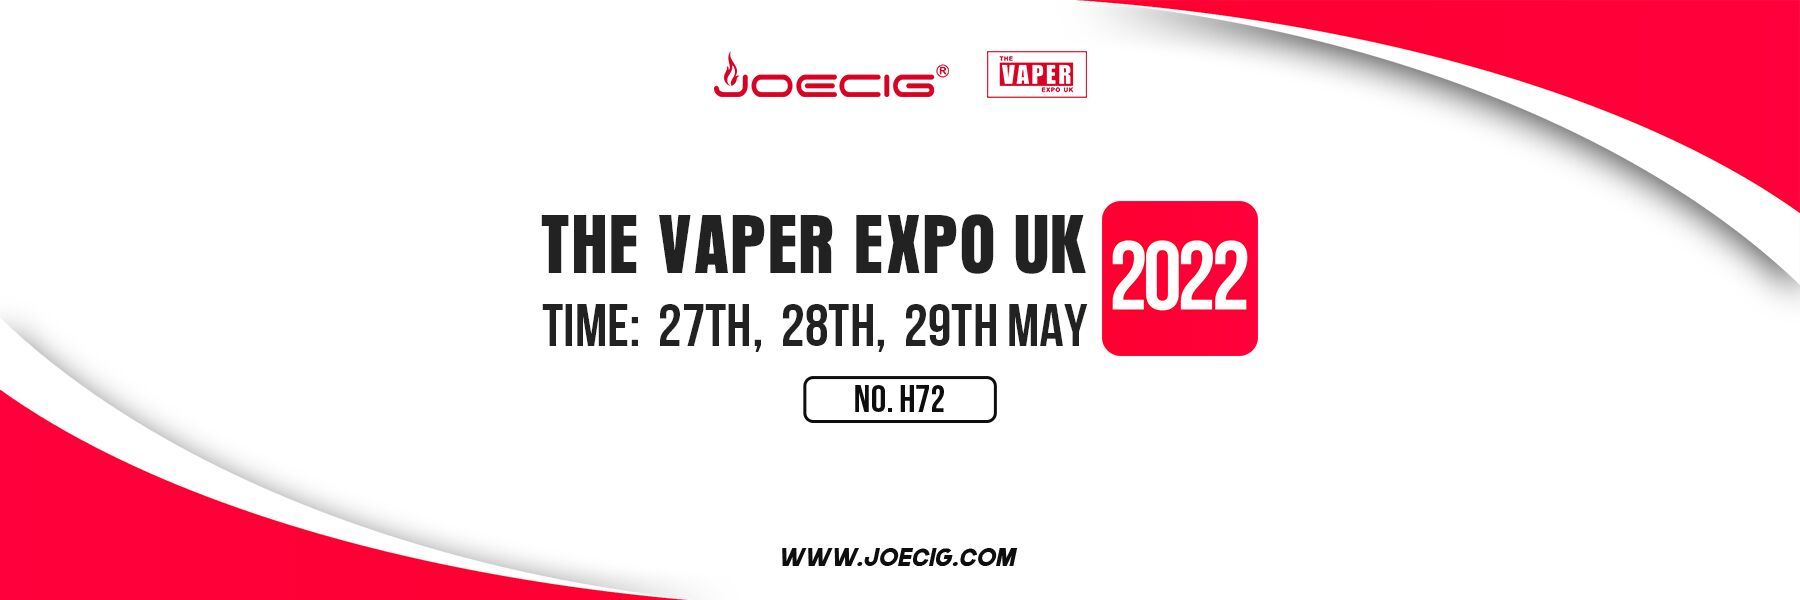 Joecig приглашает вас посетить выставку The vaper EXPO UK с 27 по 29 мая 2022 года.